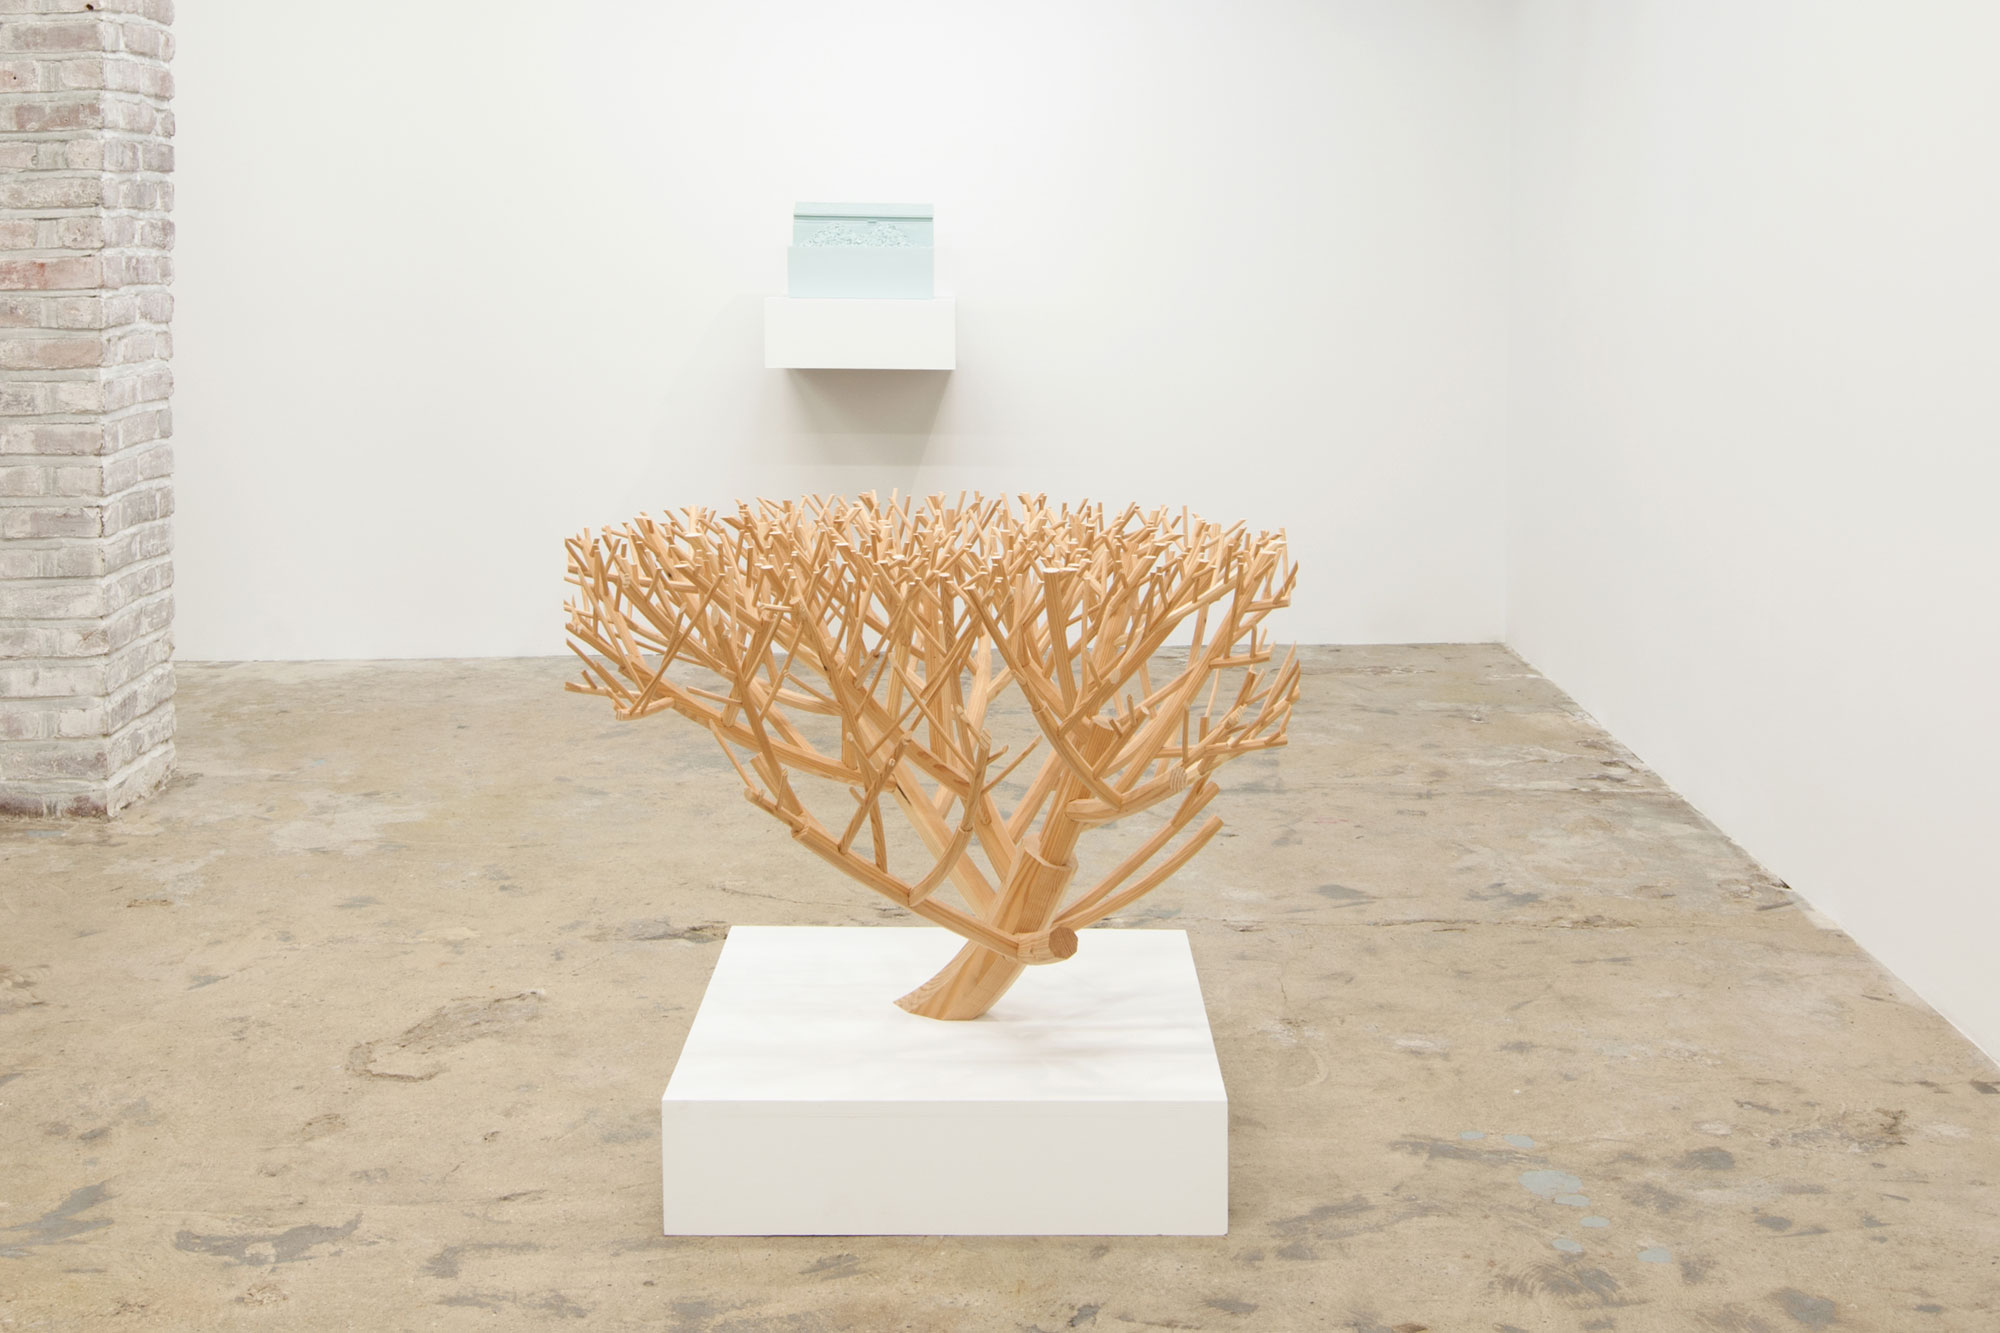 Nathaniel Robinson, Bush, 2015, wood, 24h x 36w x 26d in.